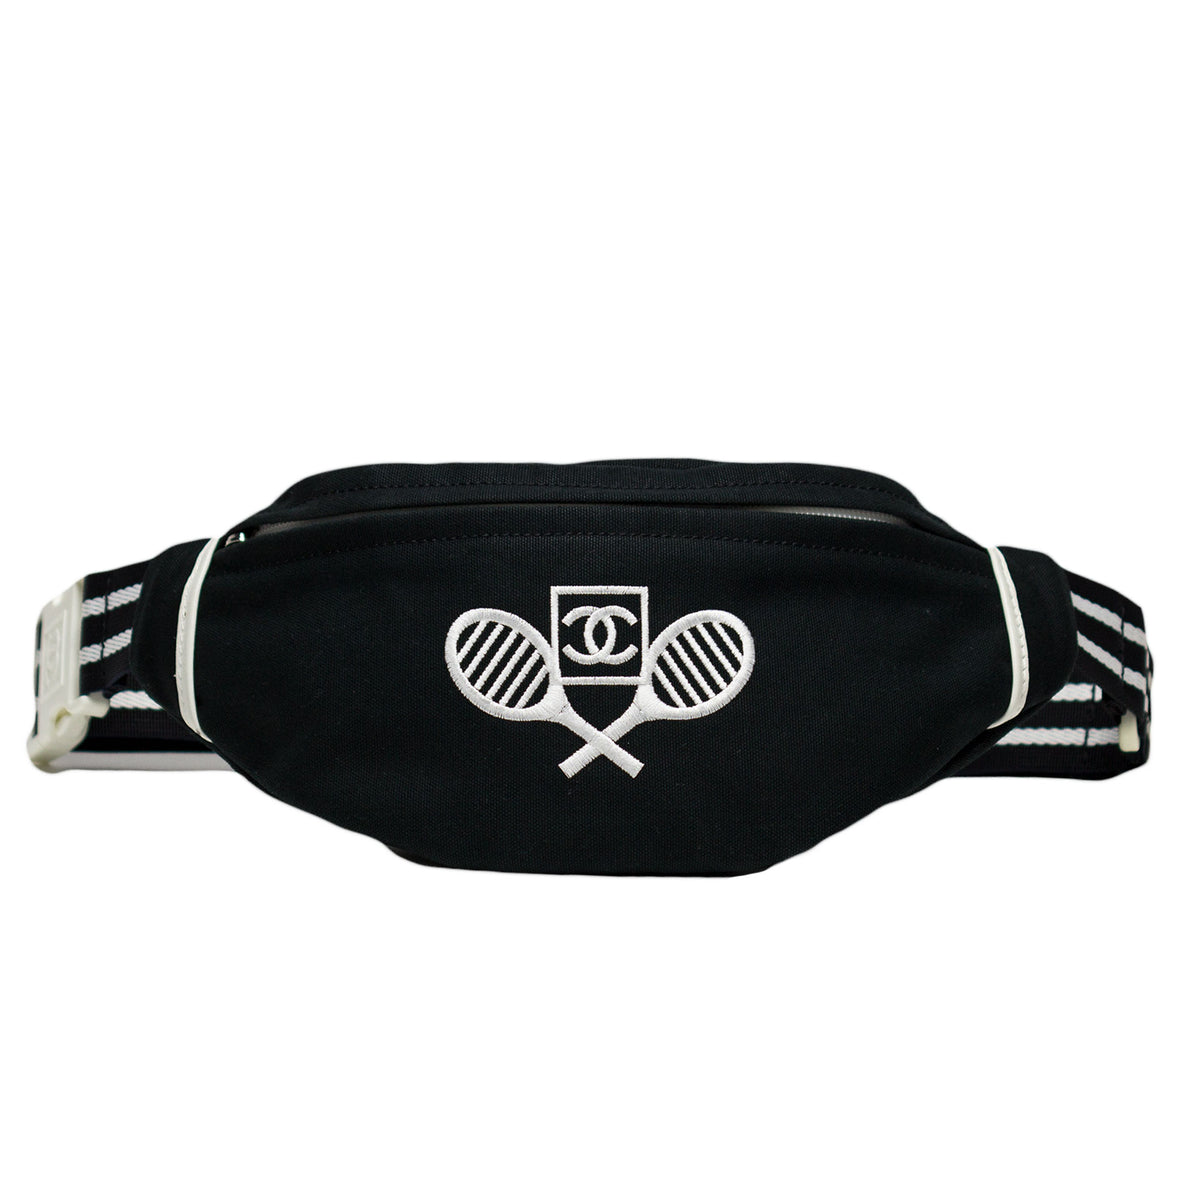 Chanel Sport Tennis Waist Bag - Pink Waist Bags, Handbags - CHA318102